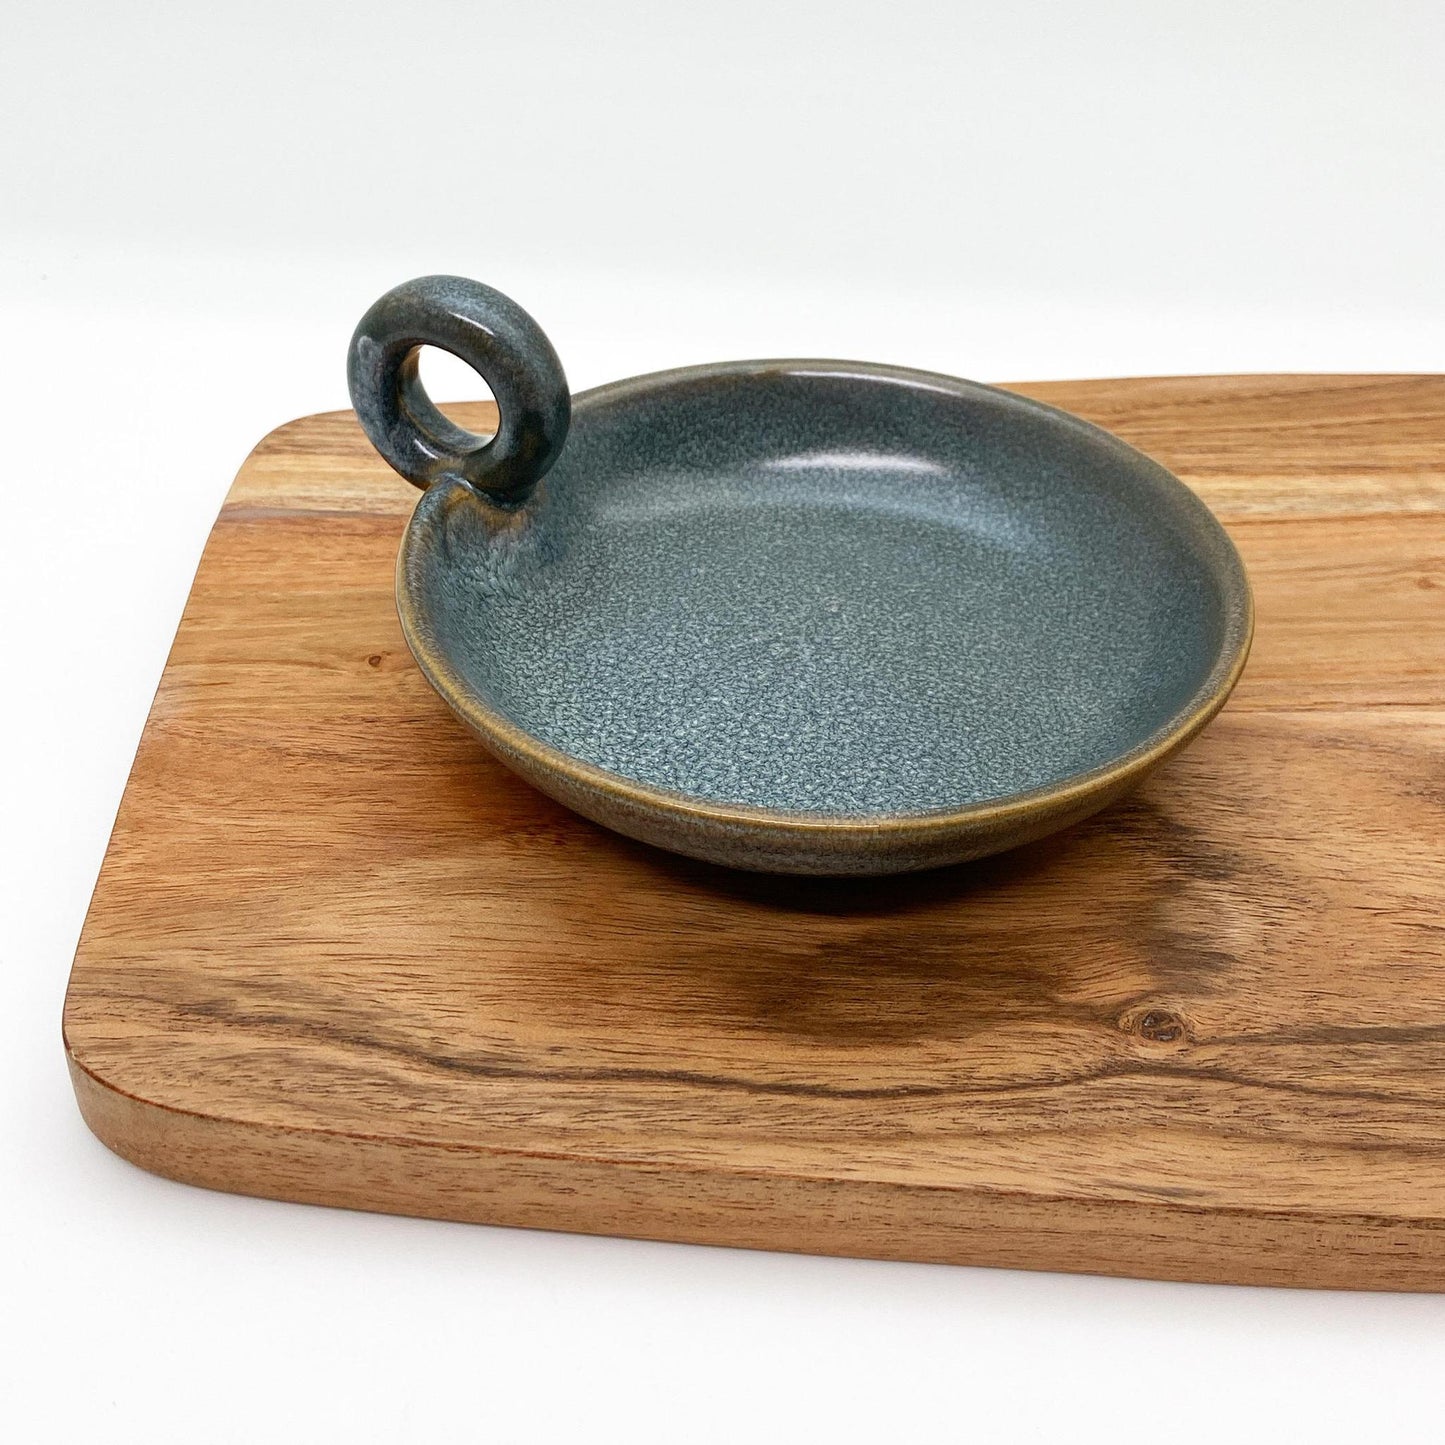 Dish - Glazed Stoneware with Handle